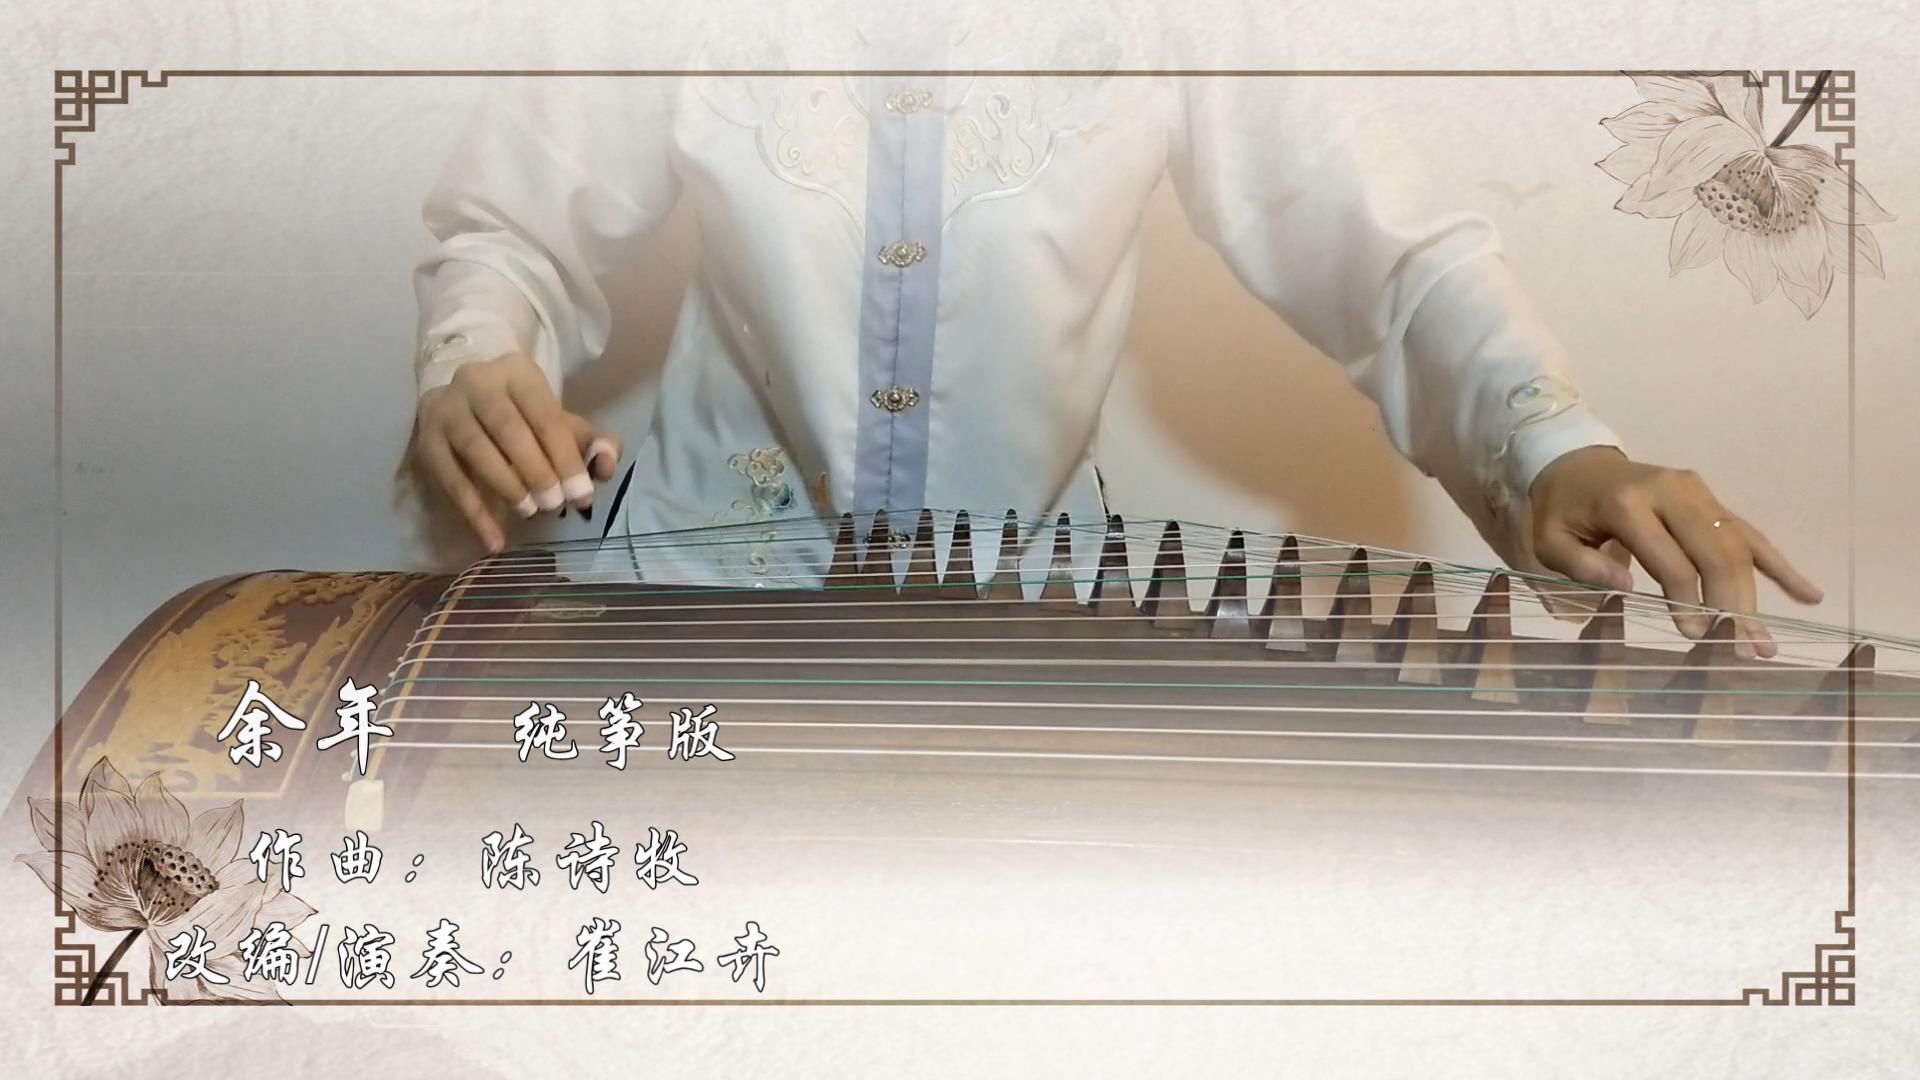 余年纯筝 古筝视频 古筝入门教学视频 古筝电视频道 中国古筝网